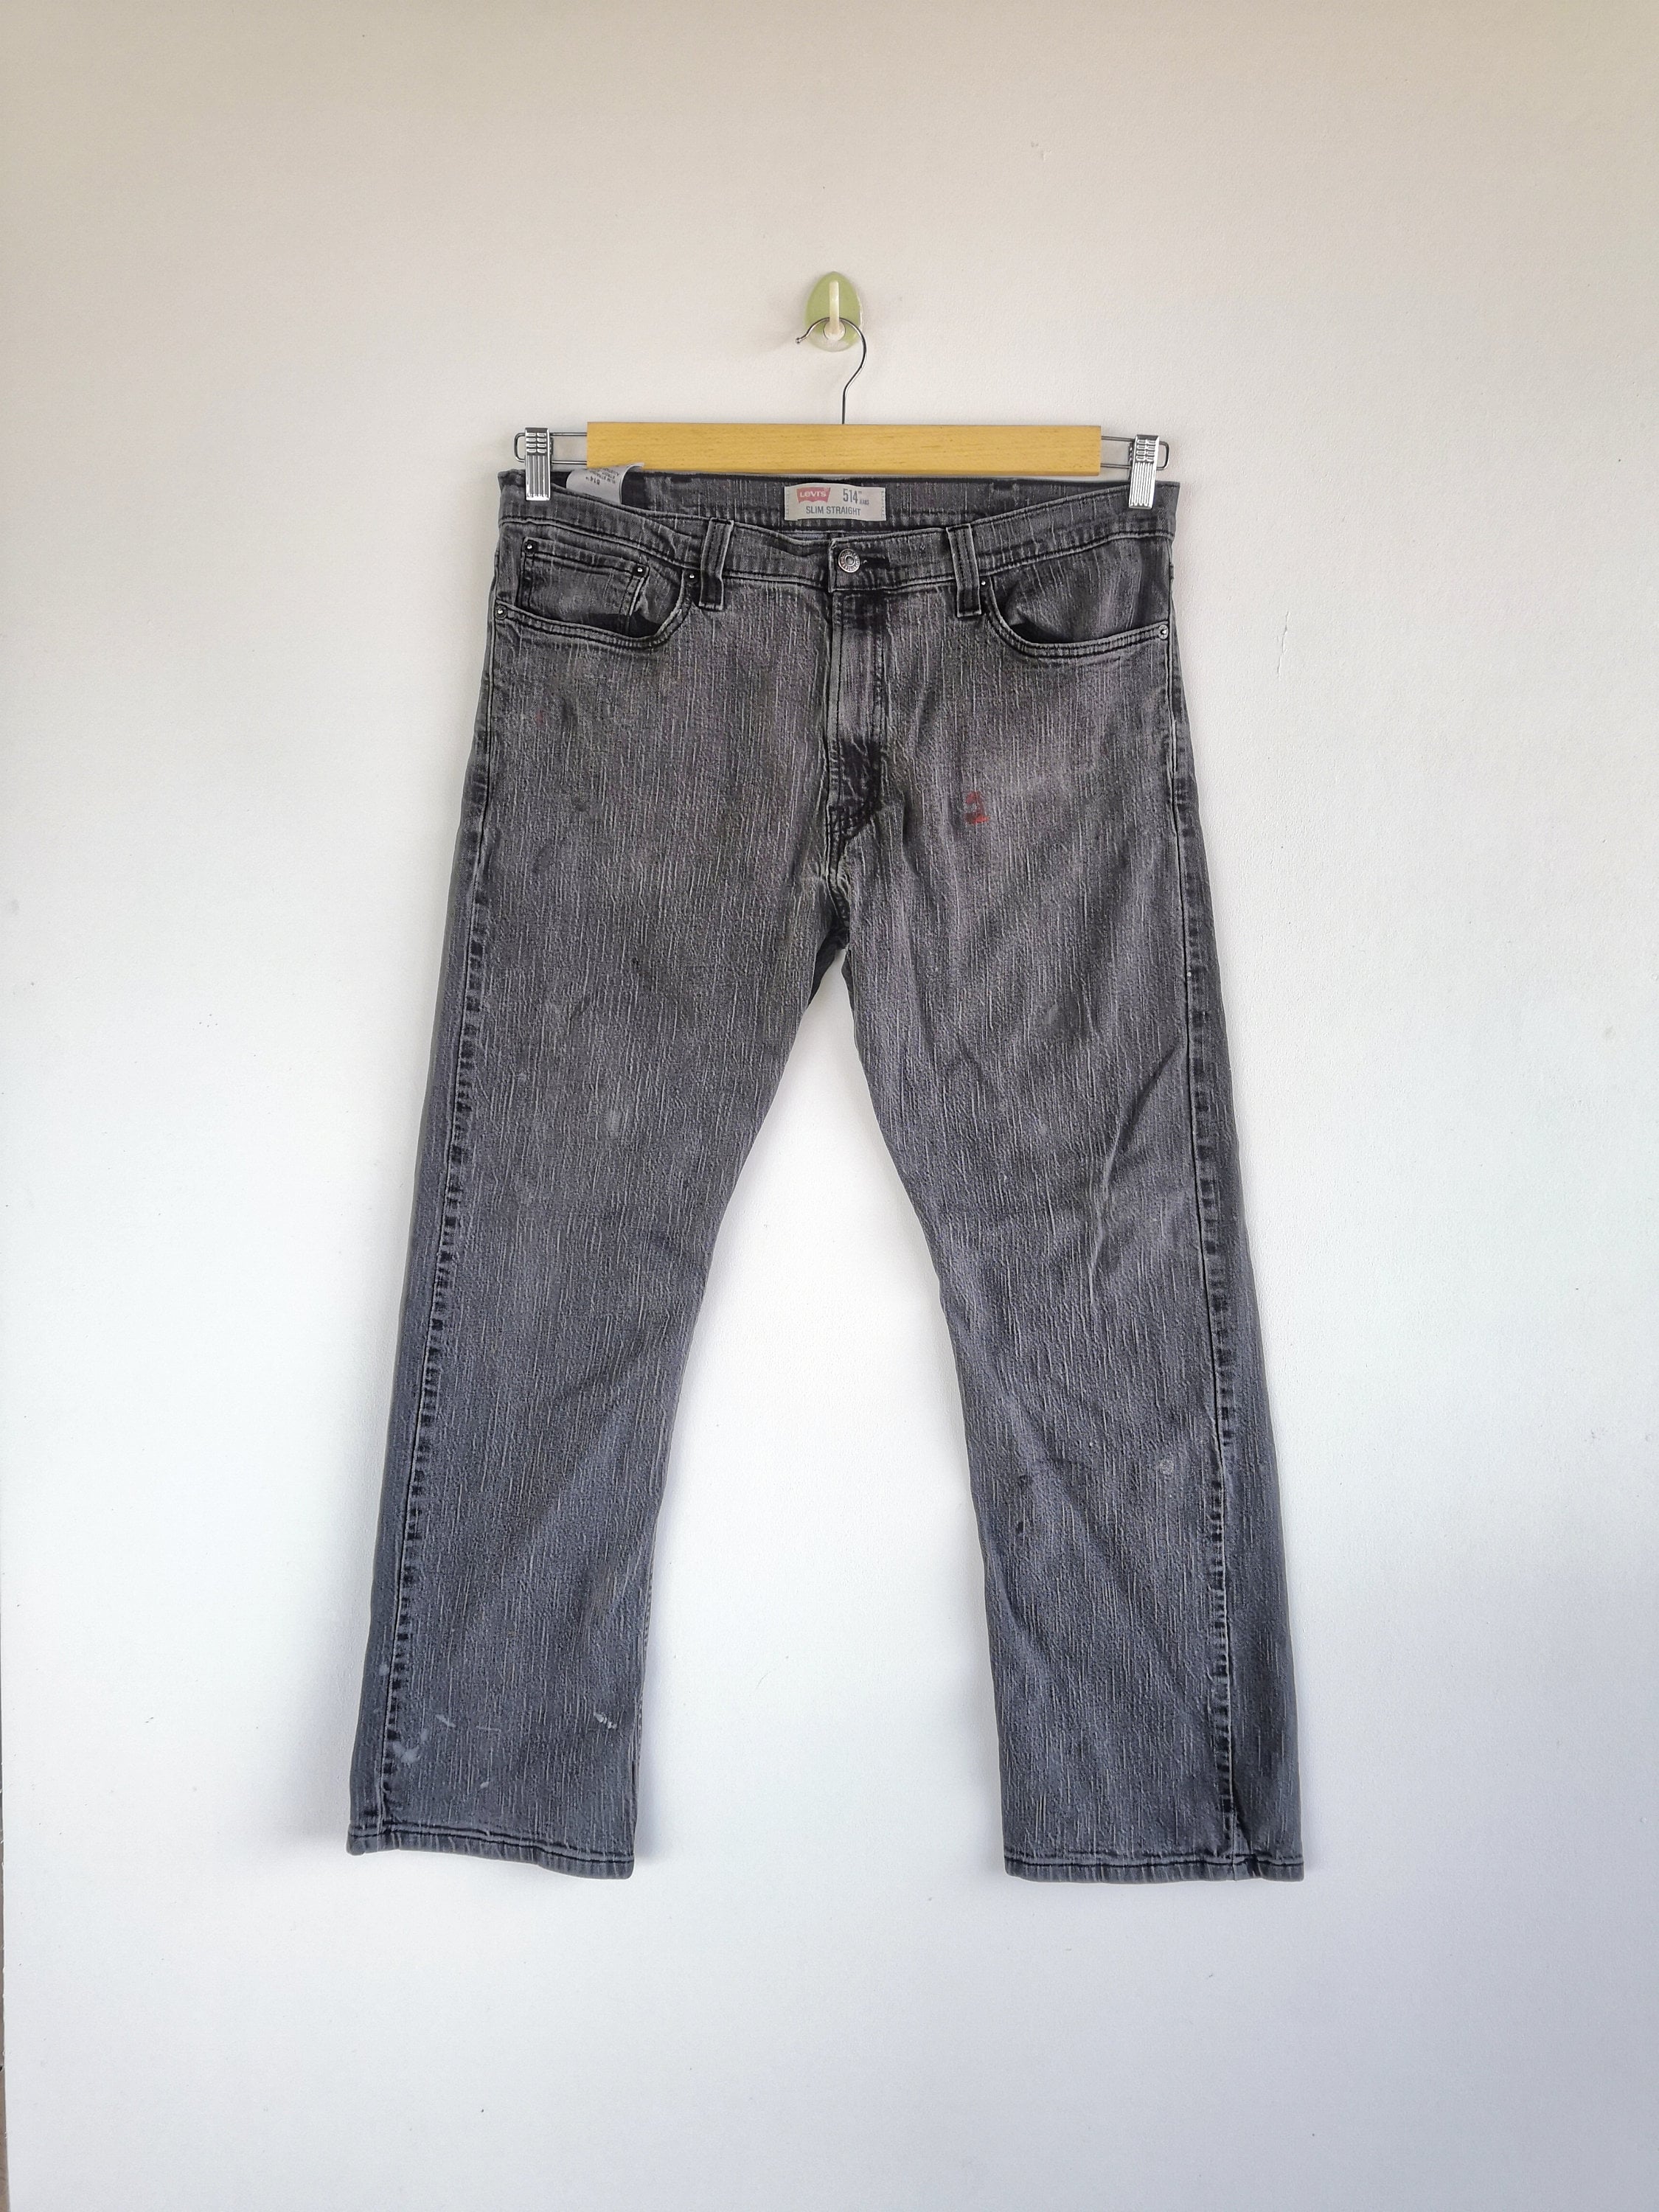 W36 Levis 514 Jeans Super Black Jeans Levi 514 Denim Womens - Etsy Finland